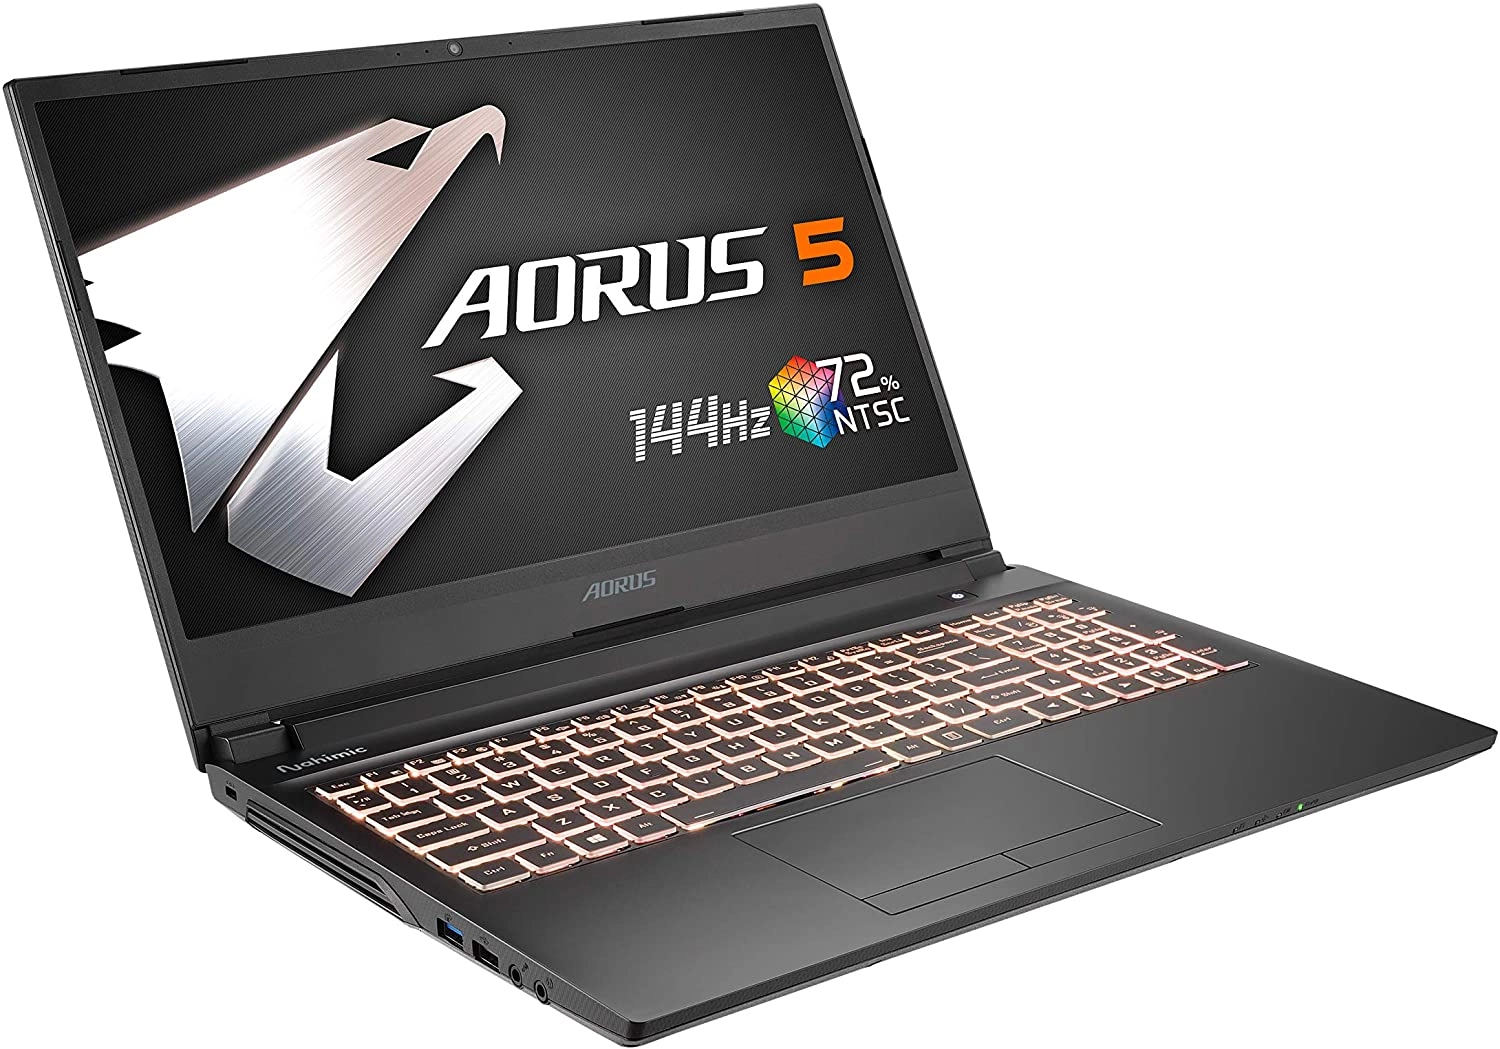 Gigabyte AORUS 5 SB-7ES1130SD laptop image